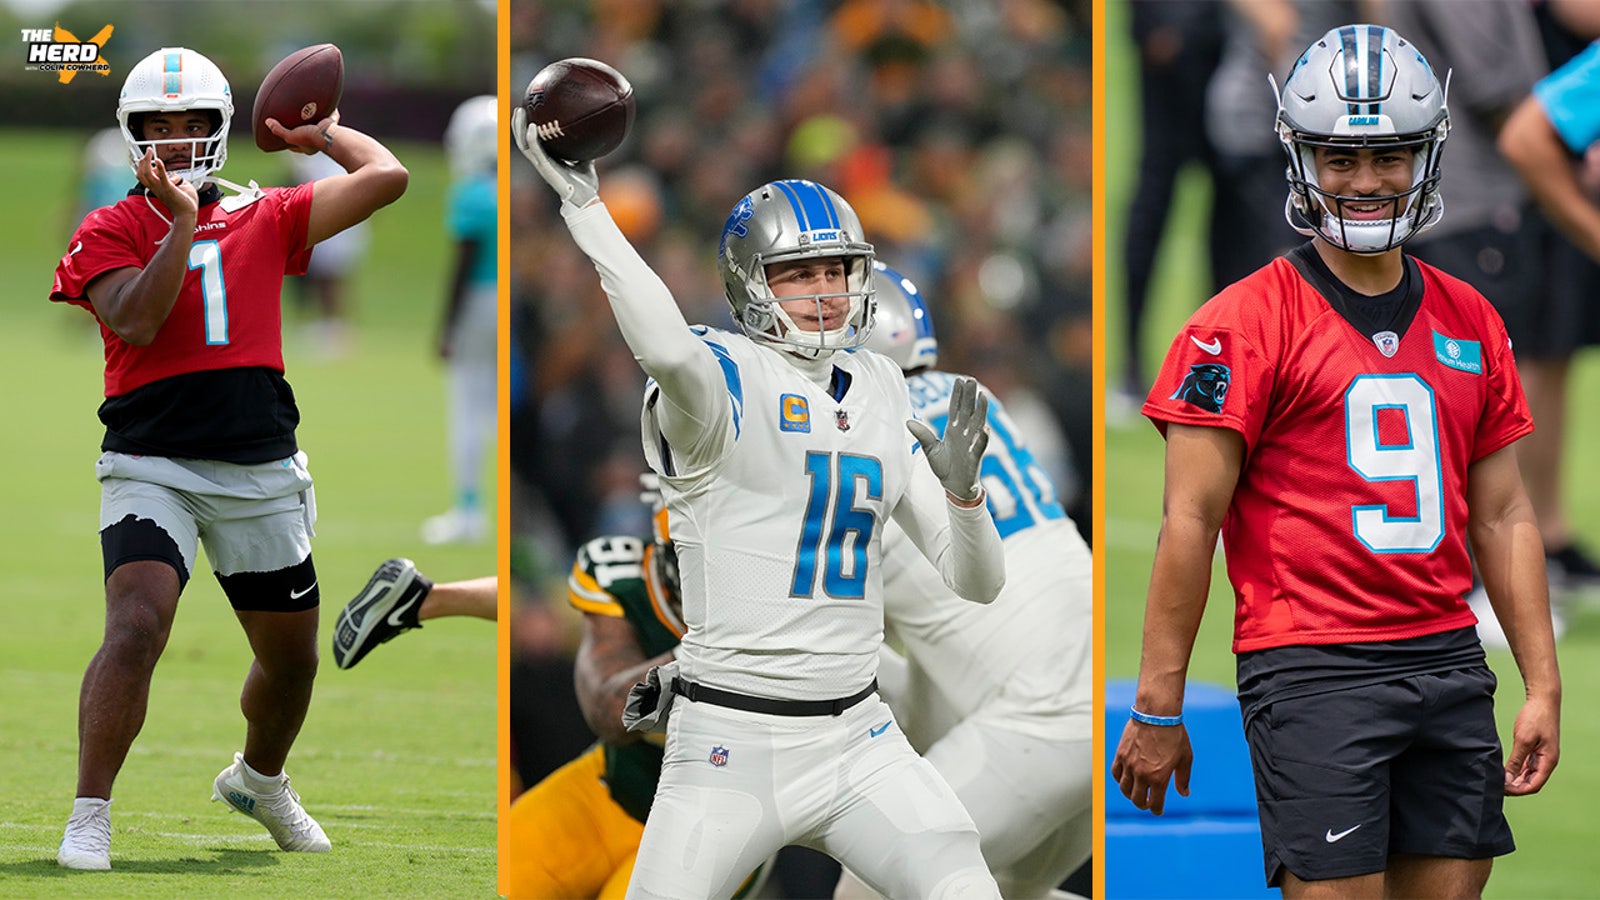 Vencedores da divisão Dolphins, Panthers e Lions destacam as previsões de Cullen para a NFL em 2023 